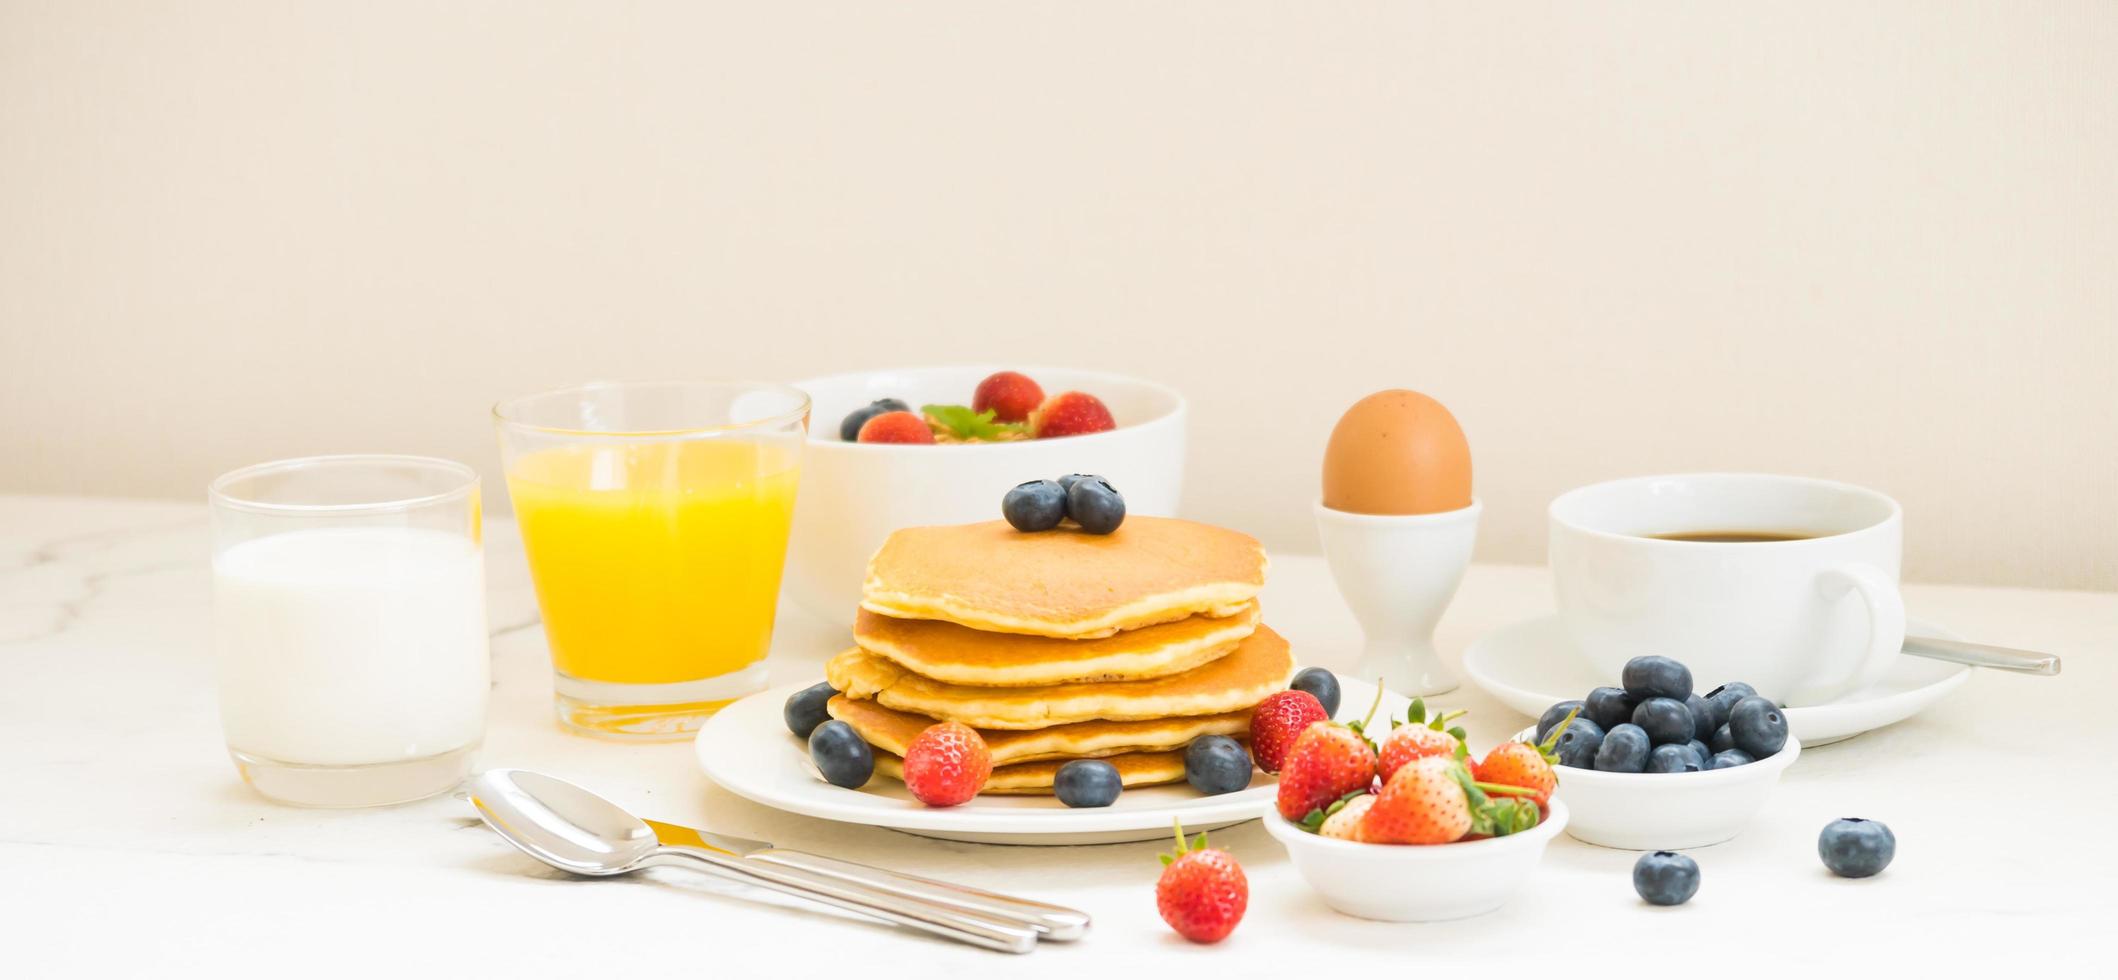 desayuno saludable foto